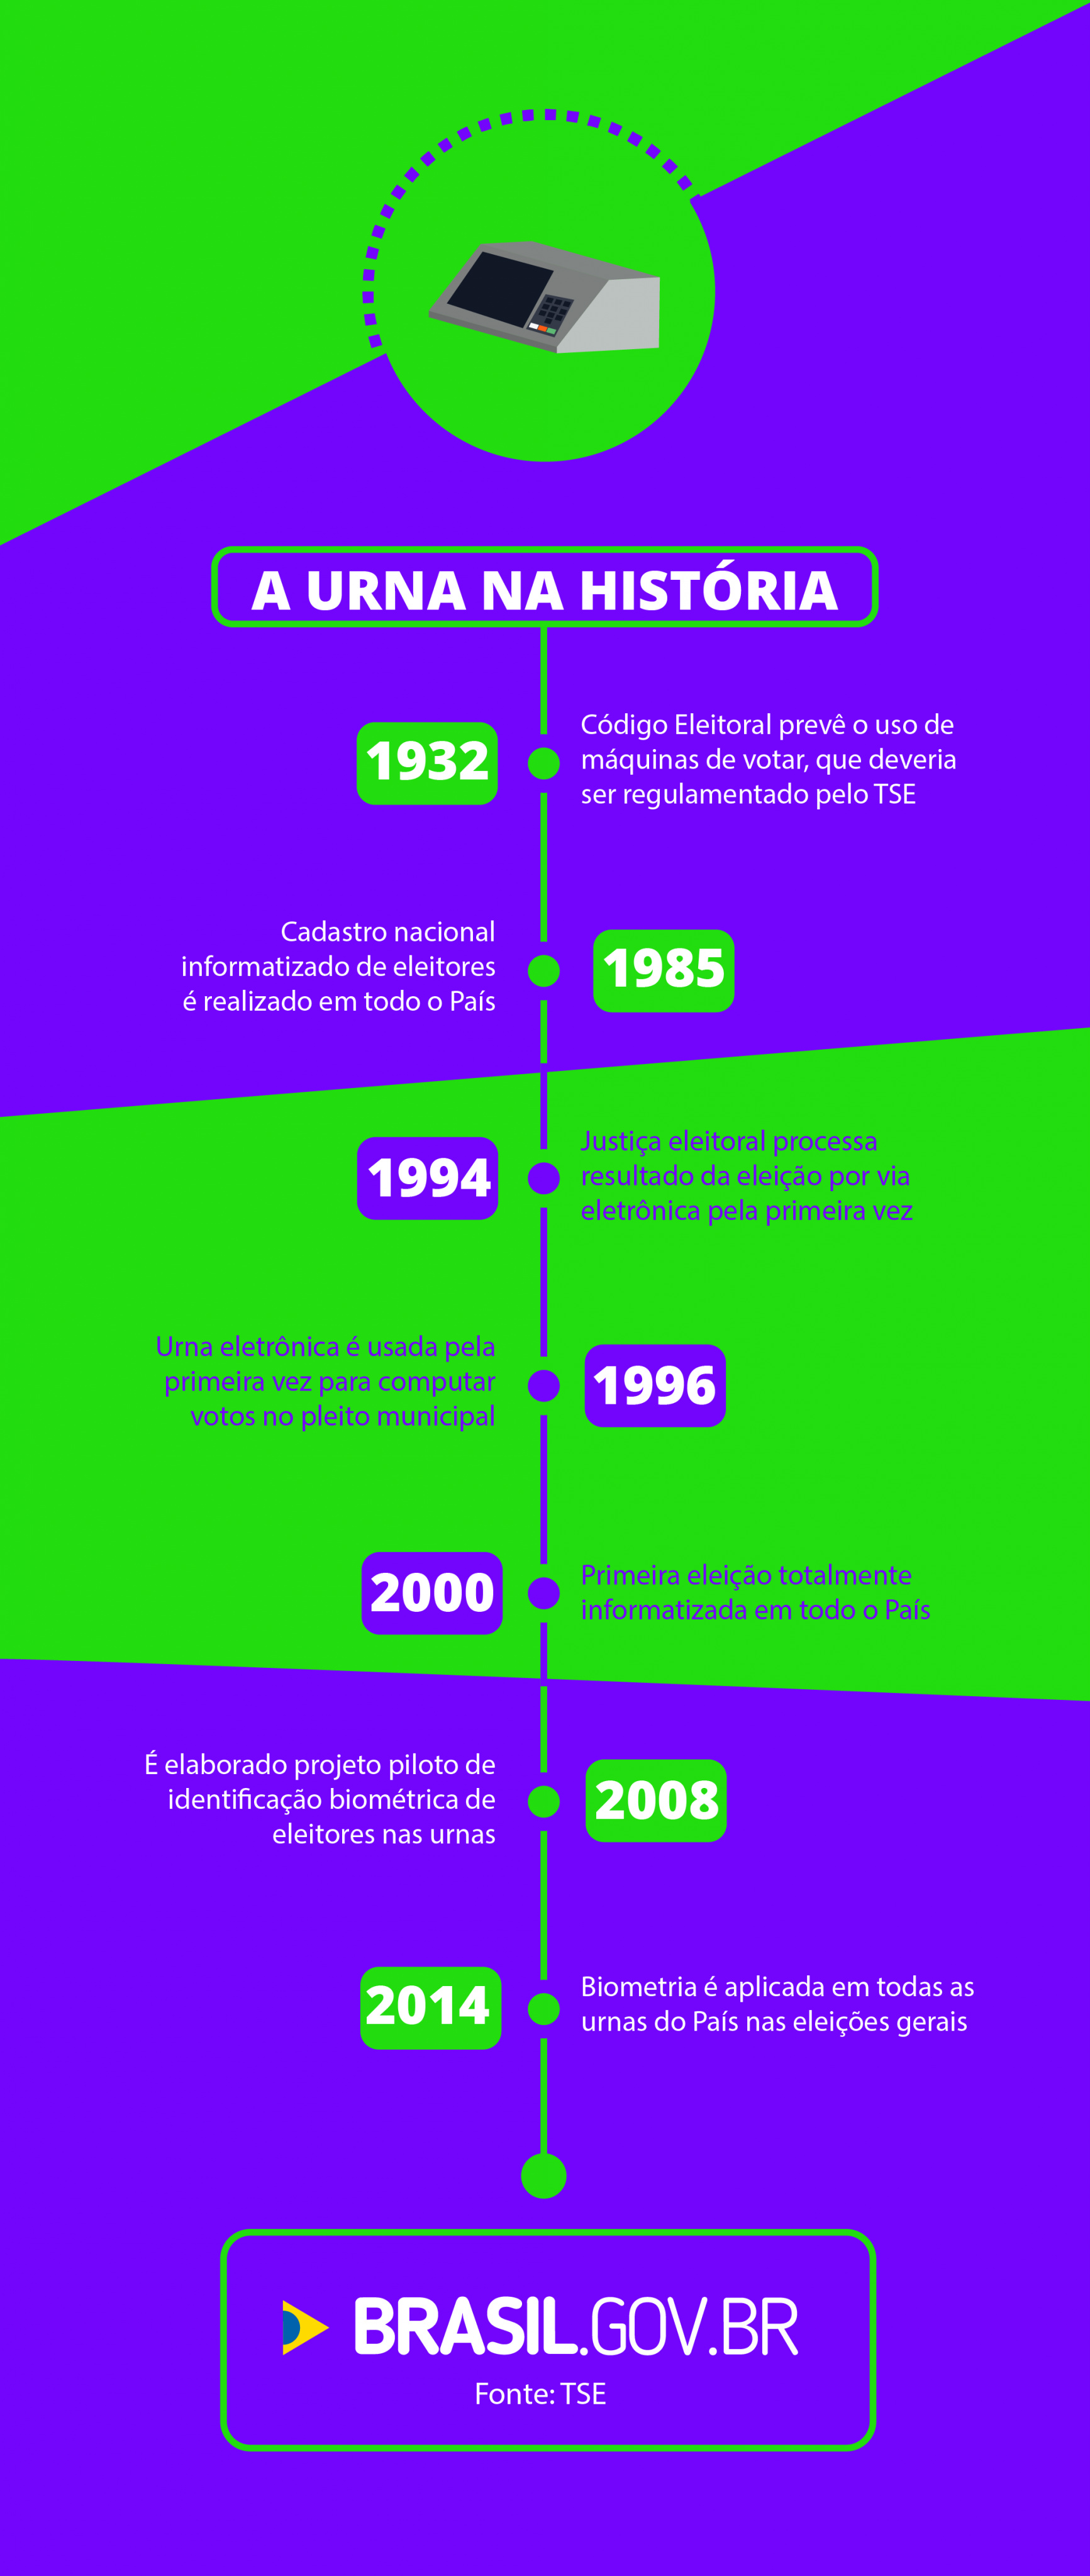 Urna eletrônica completa 20 anos de uso no Brasil